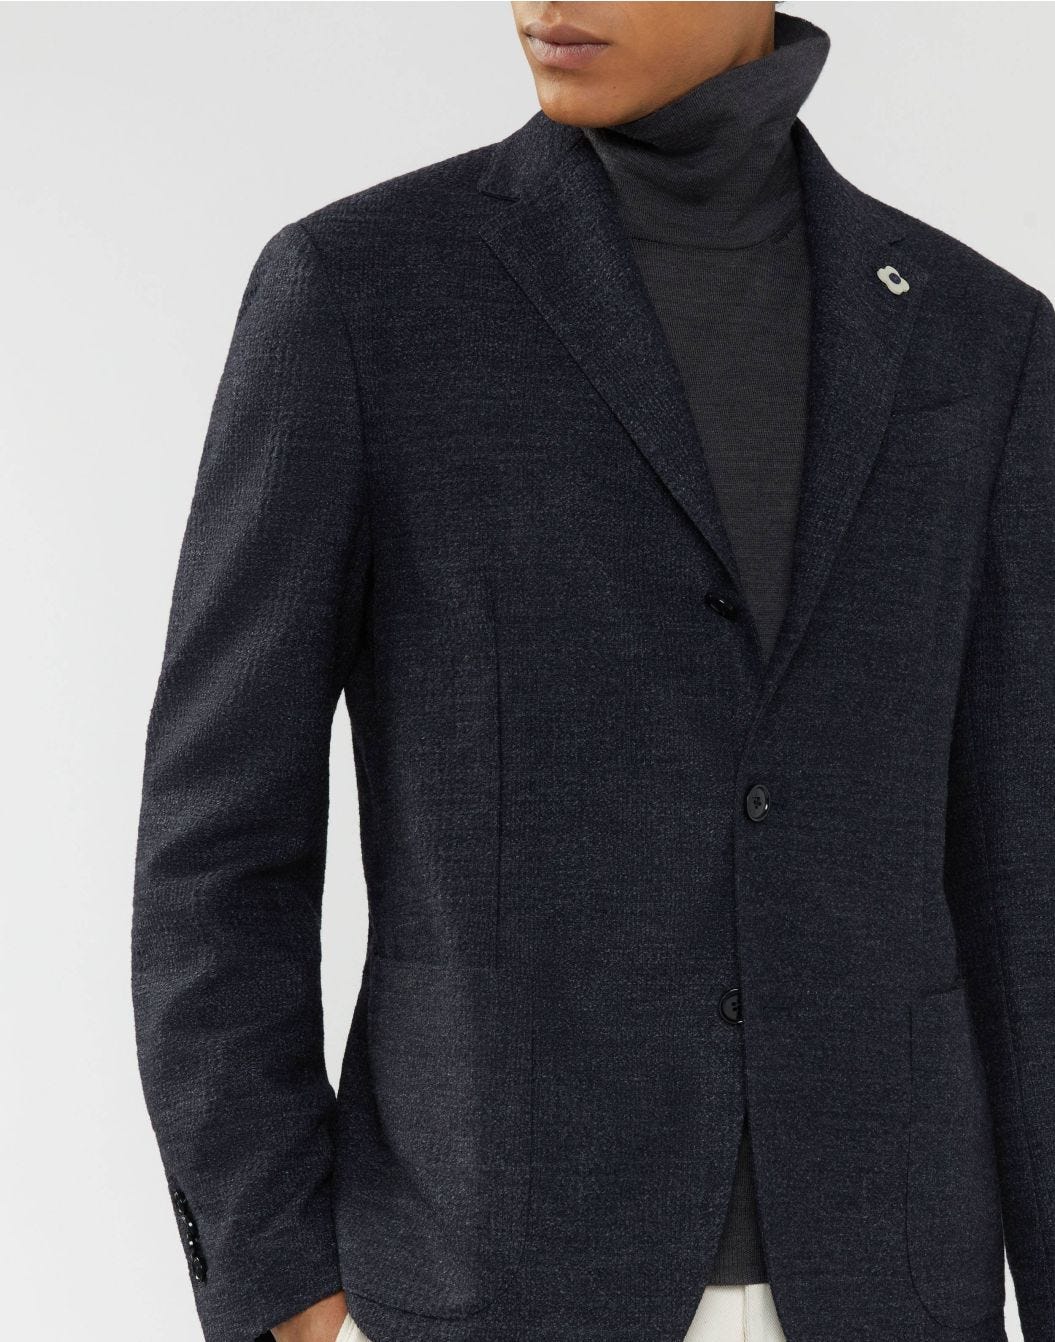 Blue Glen-check jacket - Easy Wear